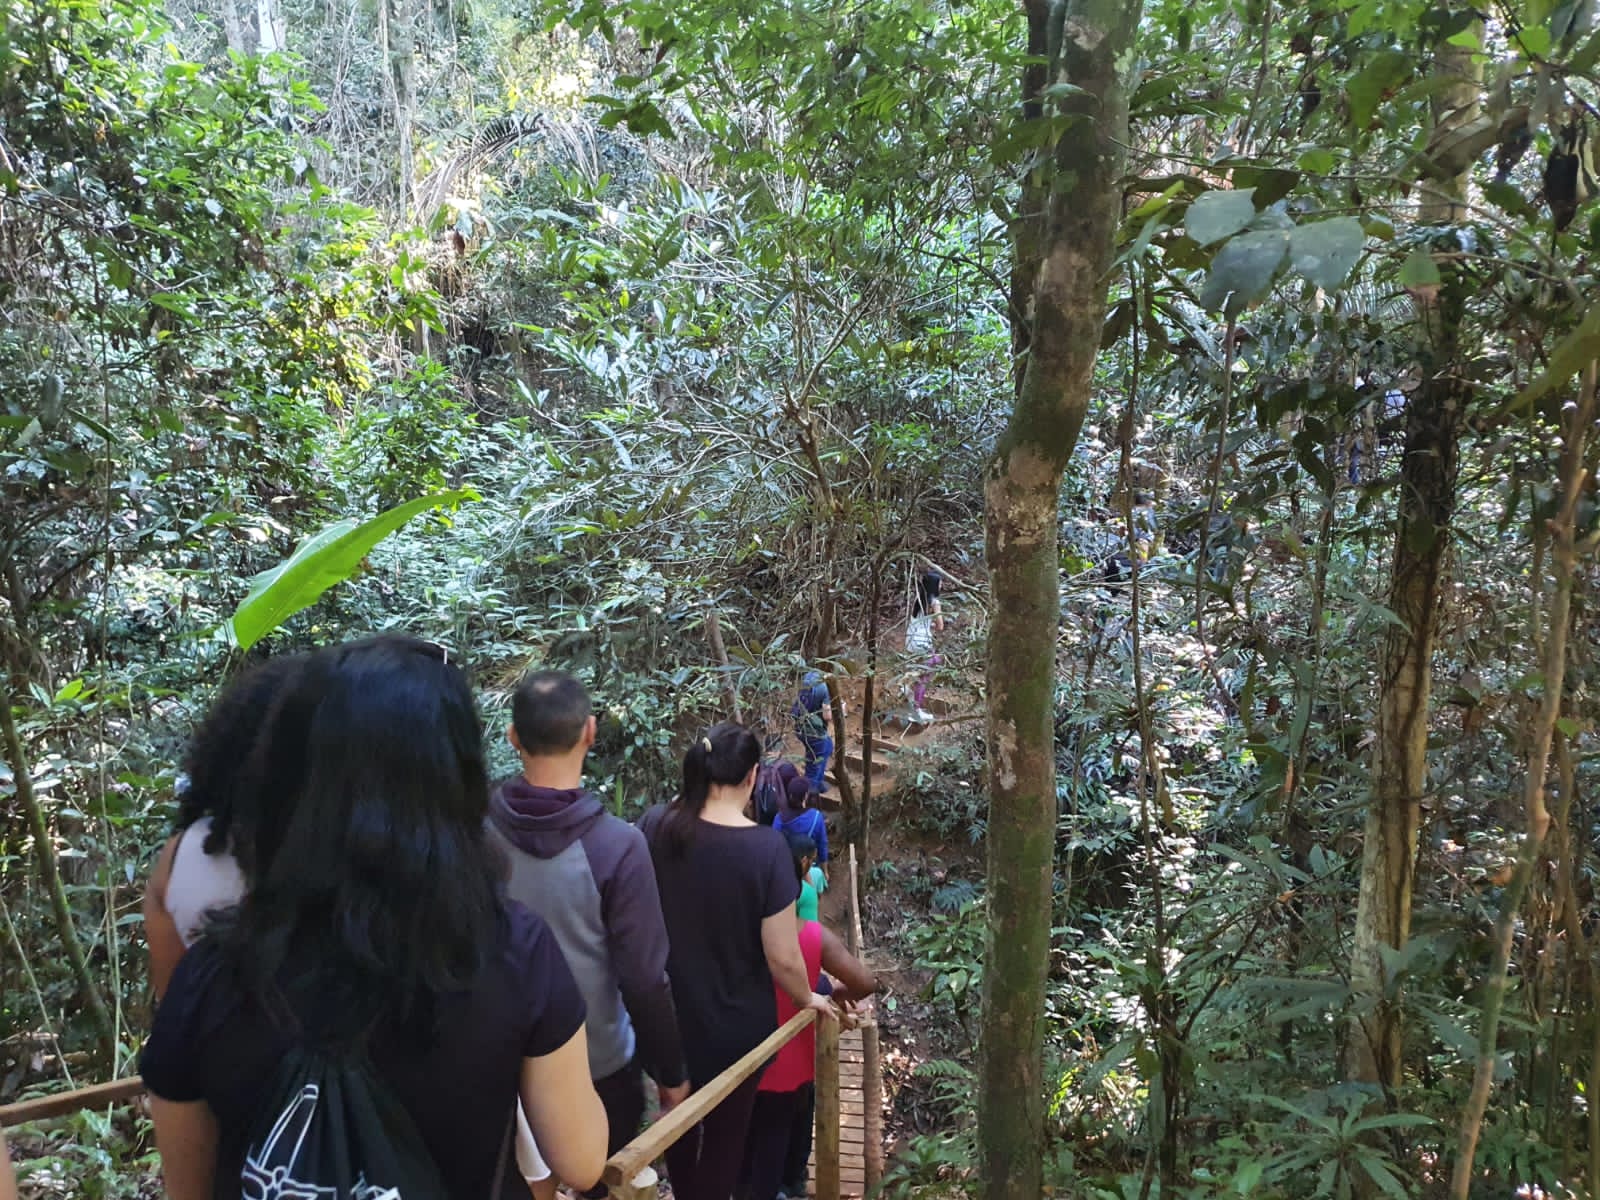 Funcionários da BRK visitaram a Floresta Nacional de Pacotuba, para uma manhã ao ar livre em contato com a natureza